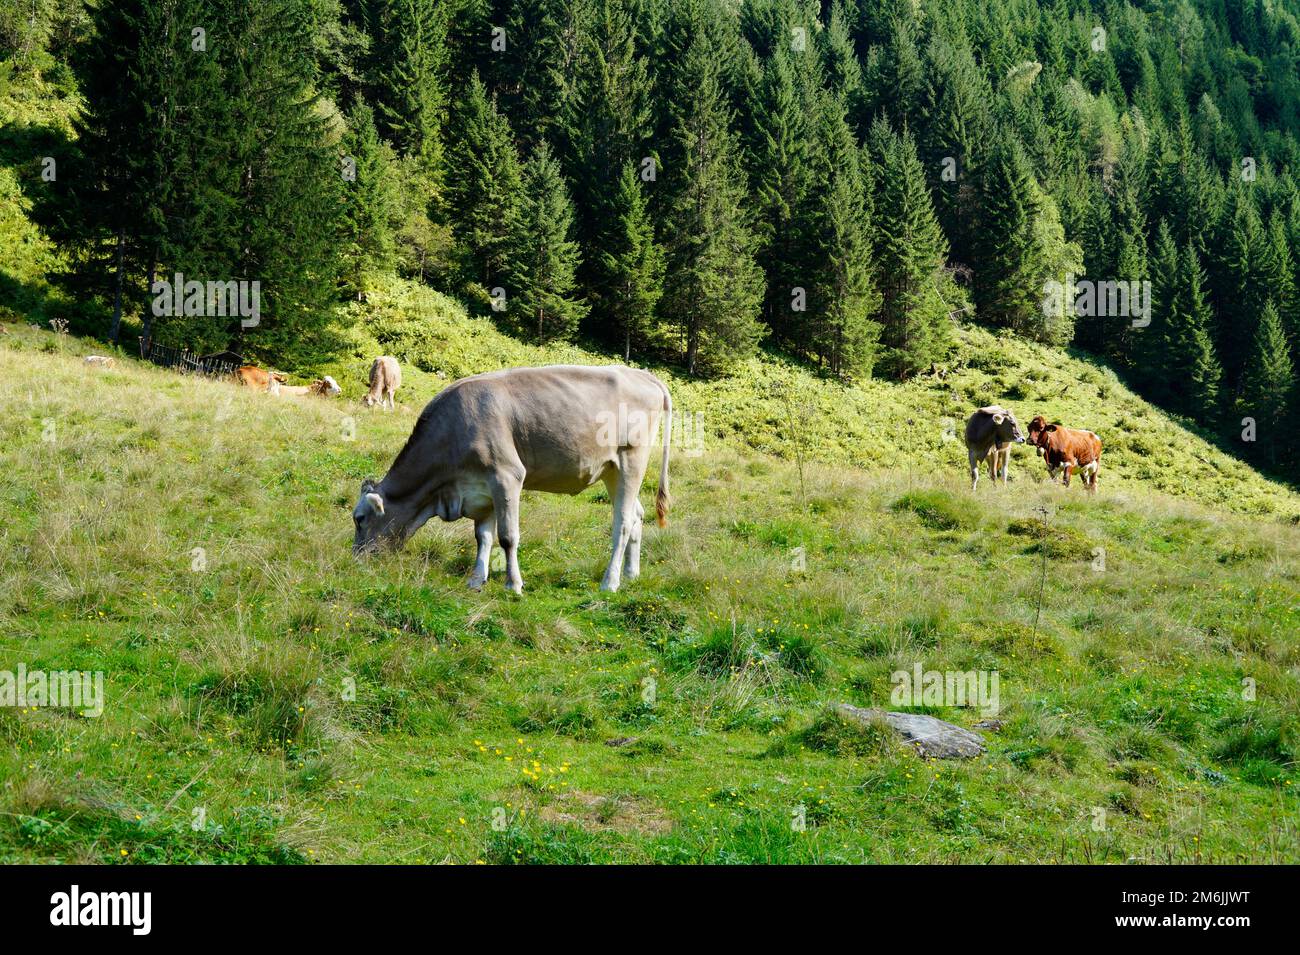 Vaches alpines qui bissent dans la vallée alpine verdoyante des Alpes autrichiennes de la région de Schladming-Dachstein lors d'une magnifique journée d'été (Schladming, Autriche) Banque D'Images